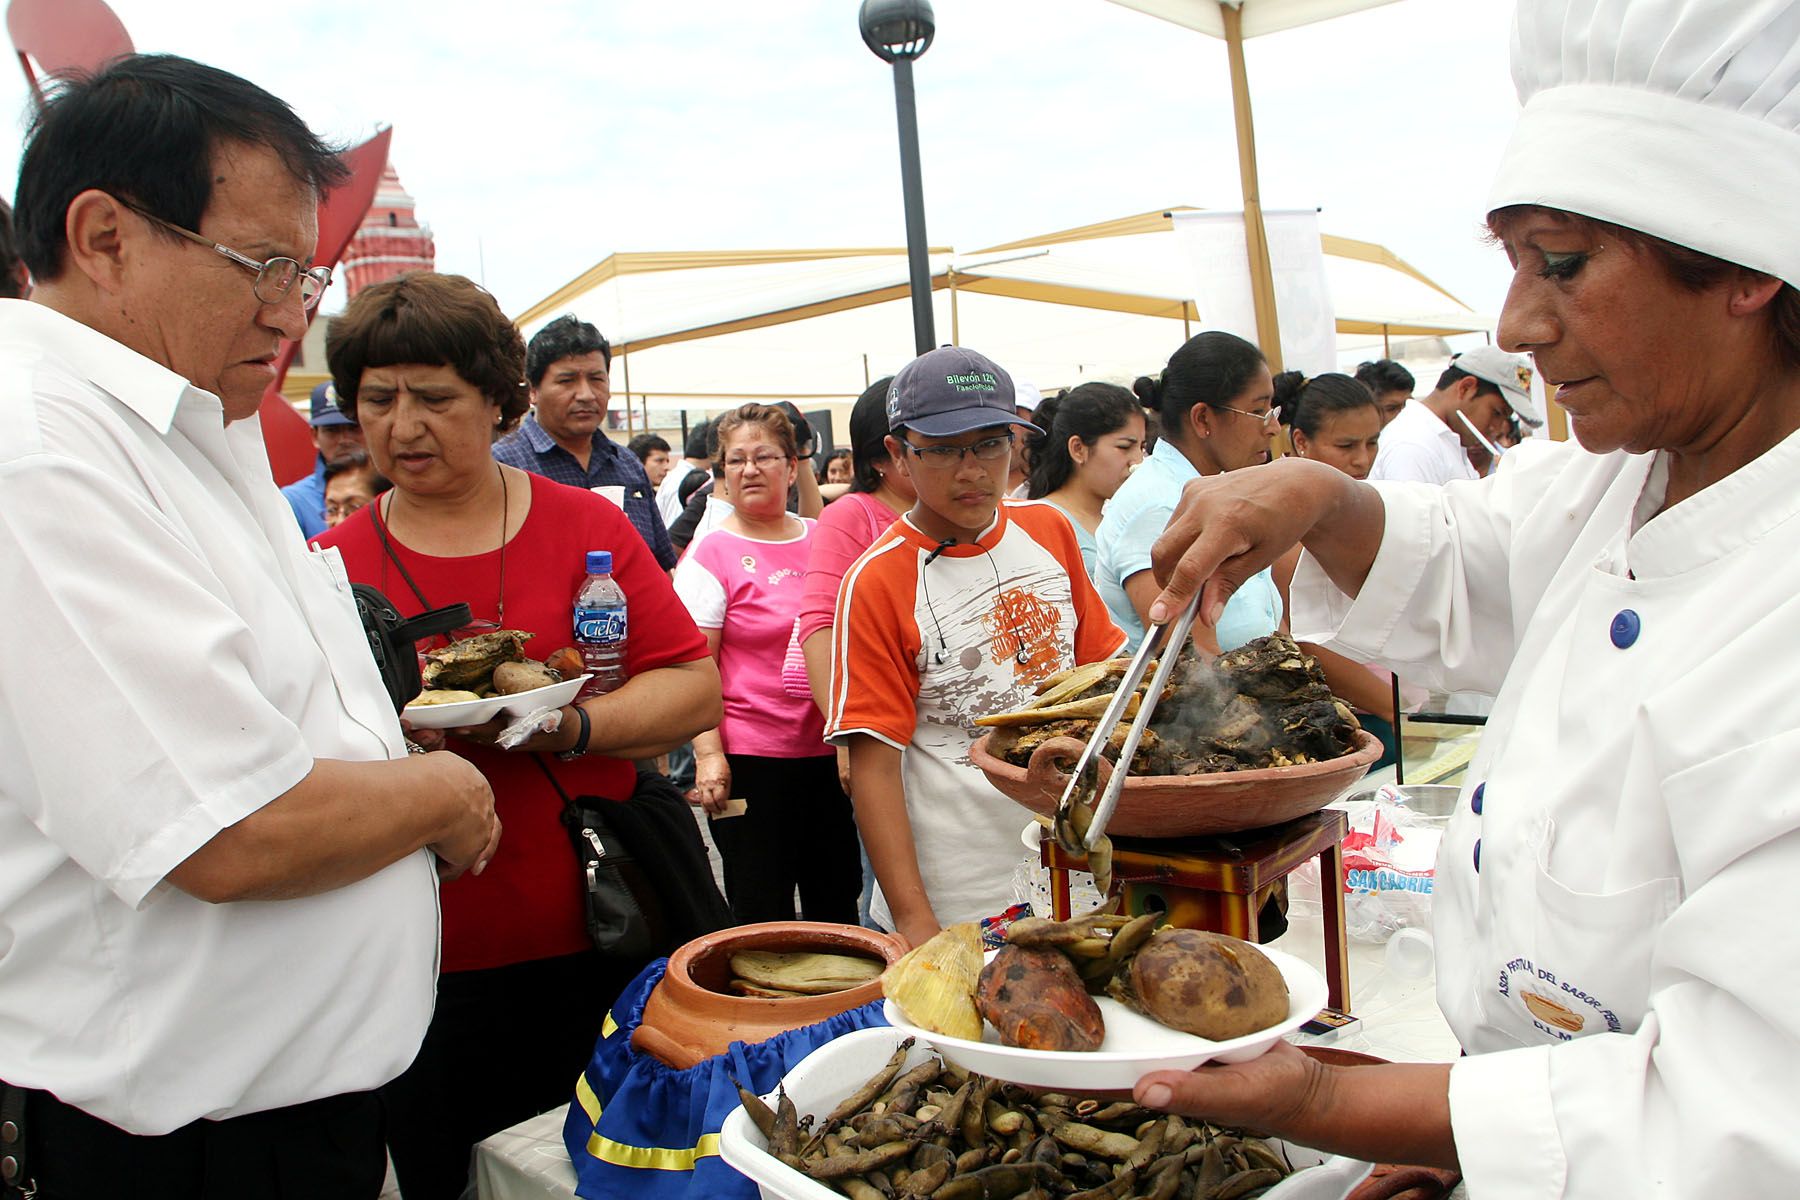 Festival Gastronómico "Sabores del Perú" el la Alameda Chabuca Granda. Foto: ANDINA / Carolina Urra